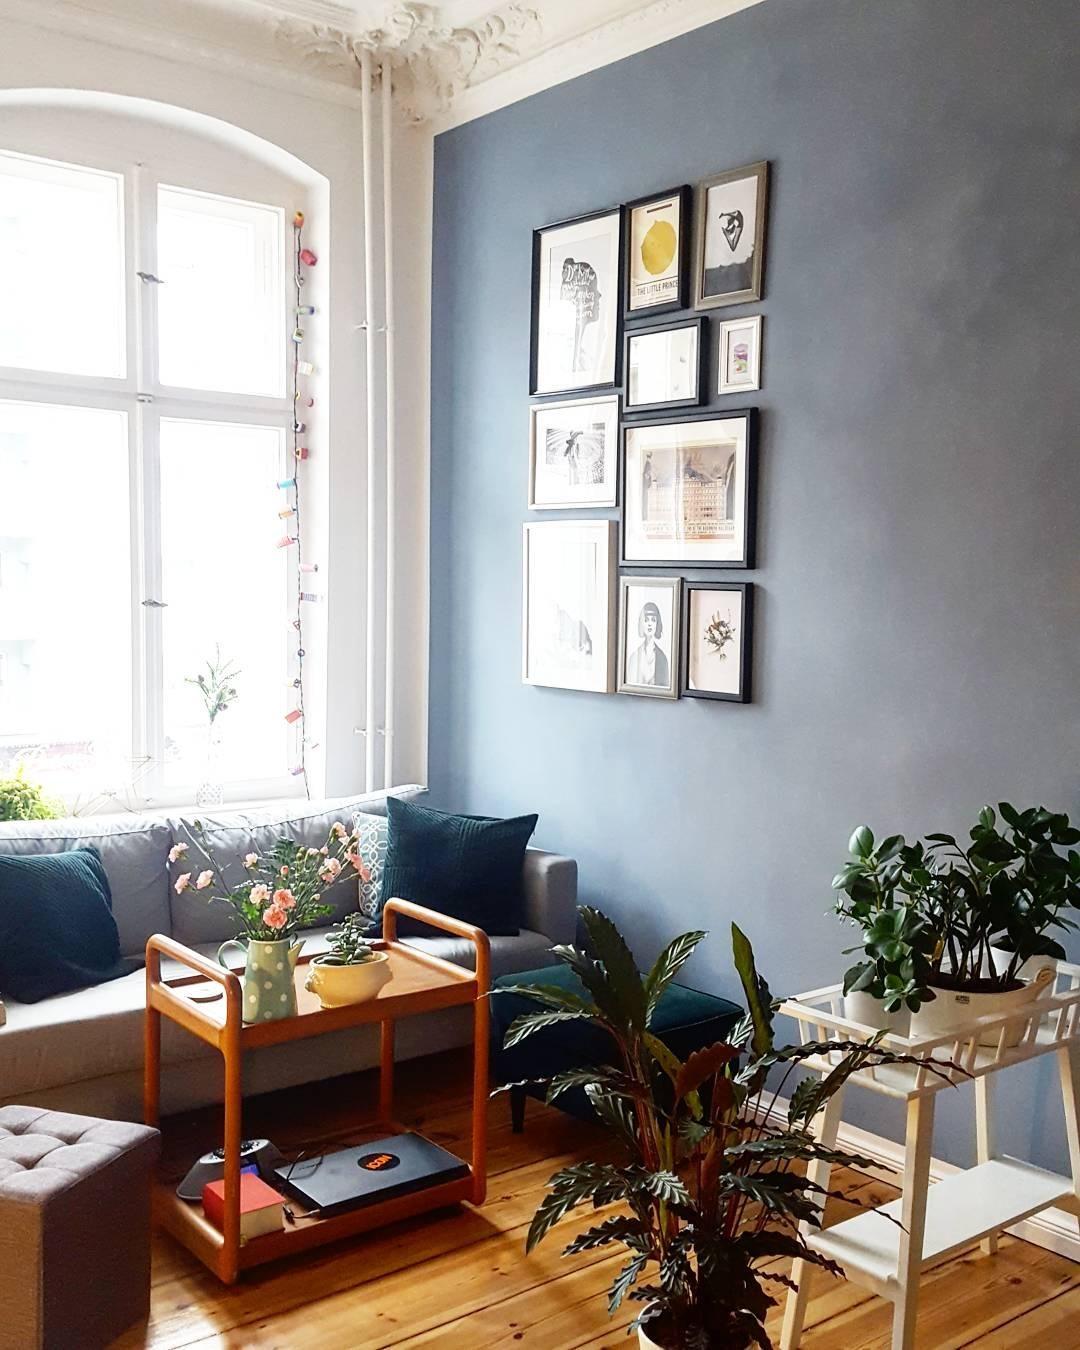 #altbauliebe #blauewand #bilderwand #couch #indoorgarden #hygge #cozy